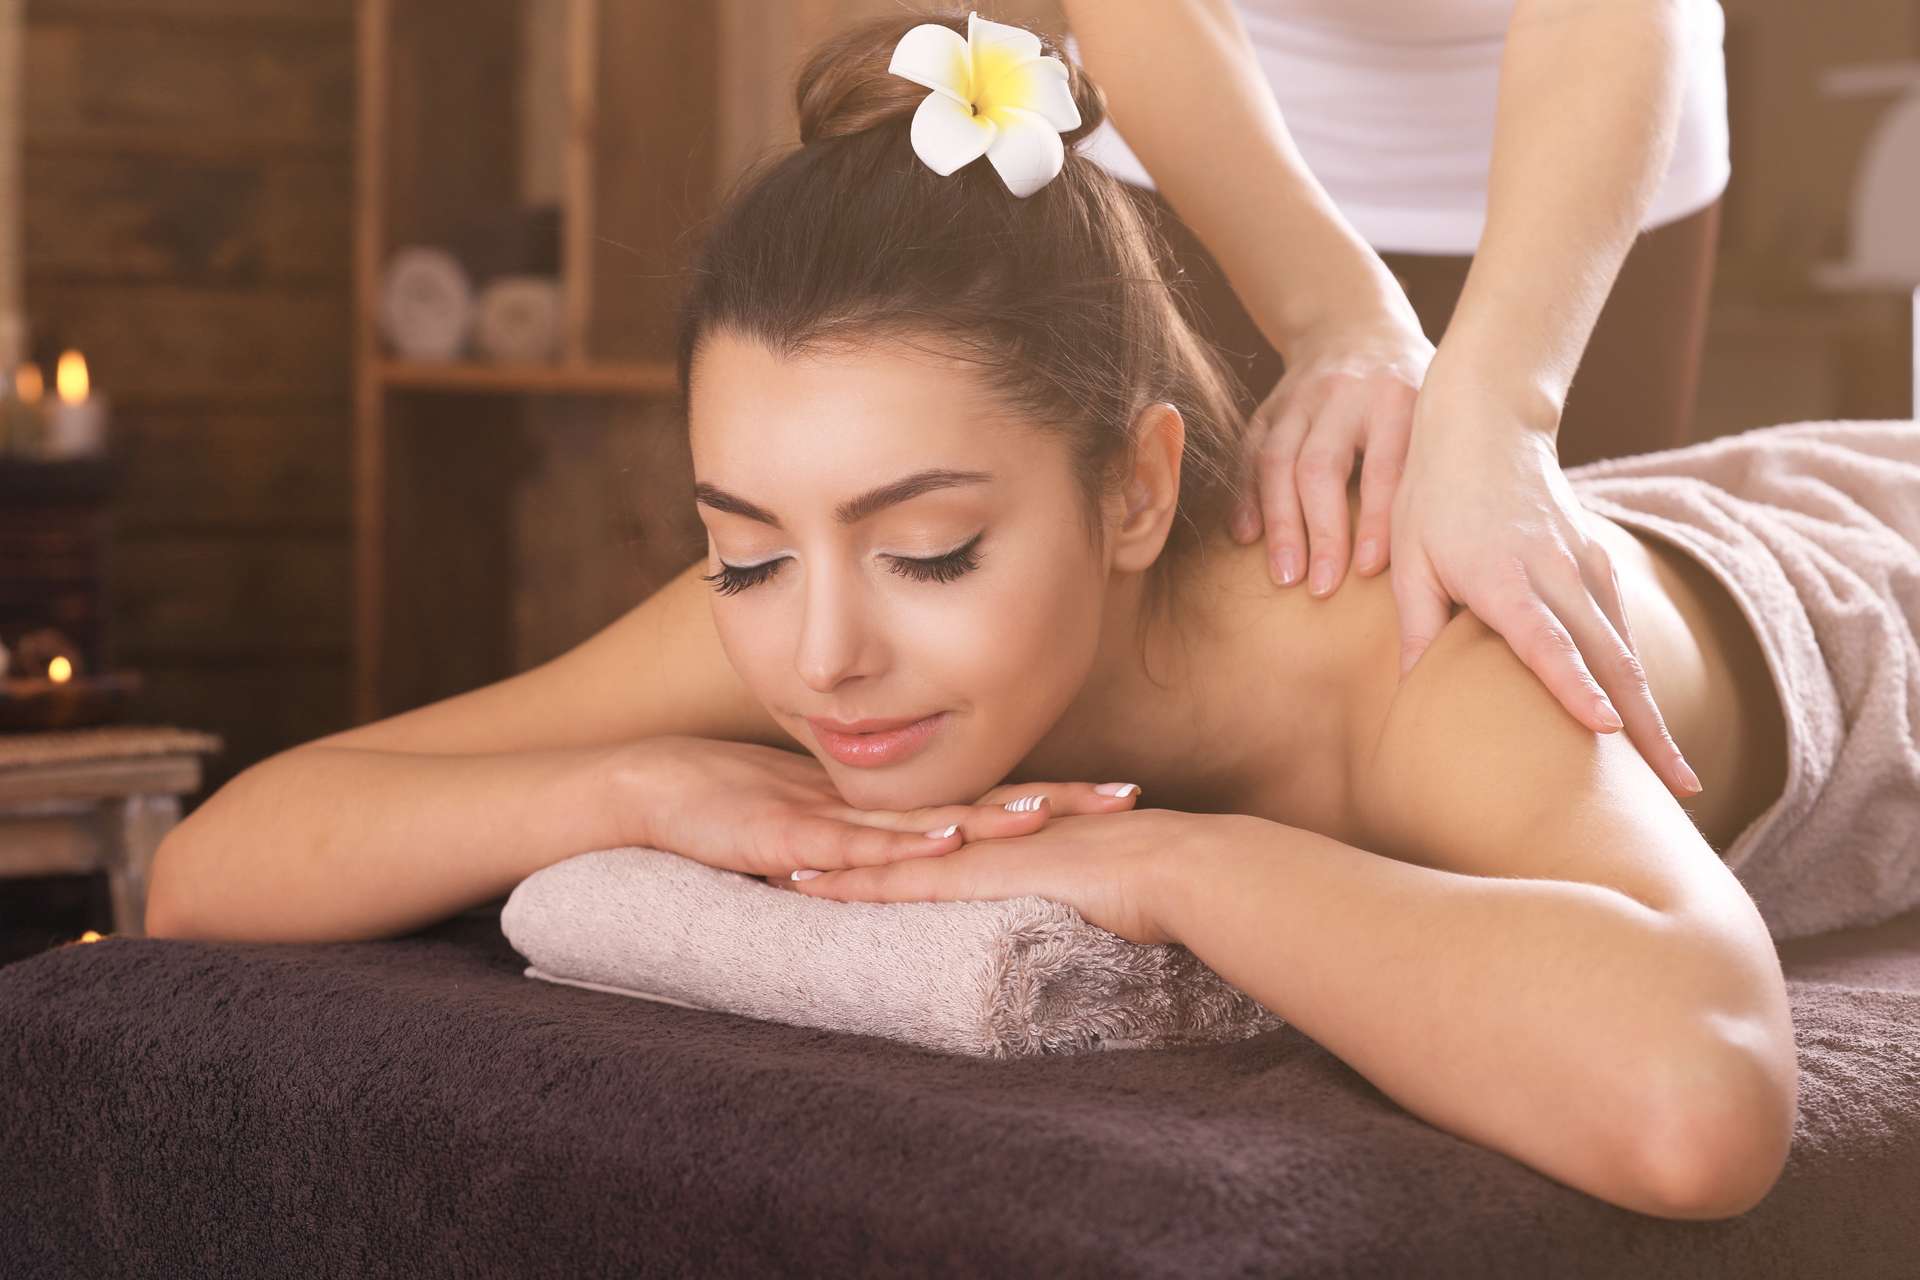 Massage cổ vai gáy là biện pháp xoa bóp bấm huyệt giúp giảm đau nhức, căng cơ